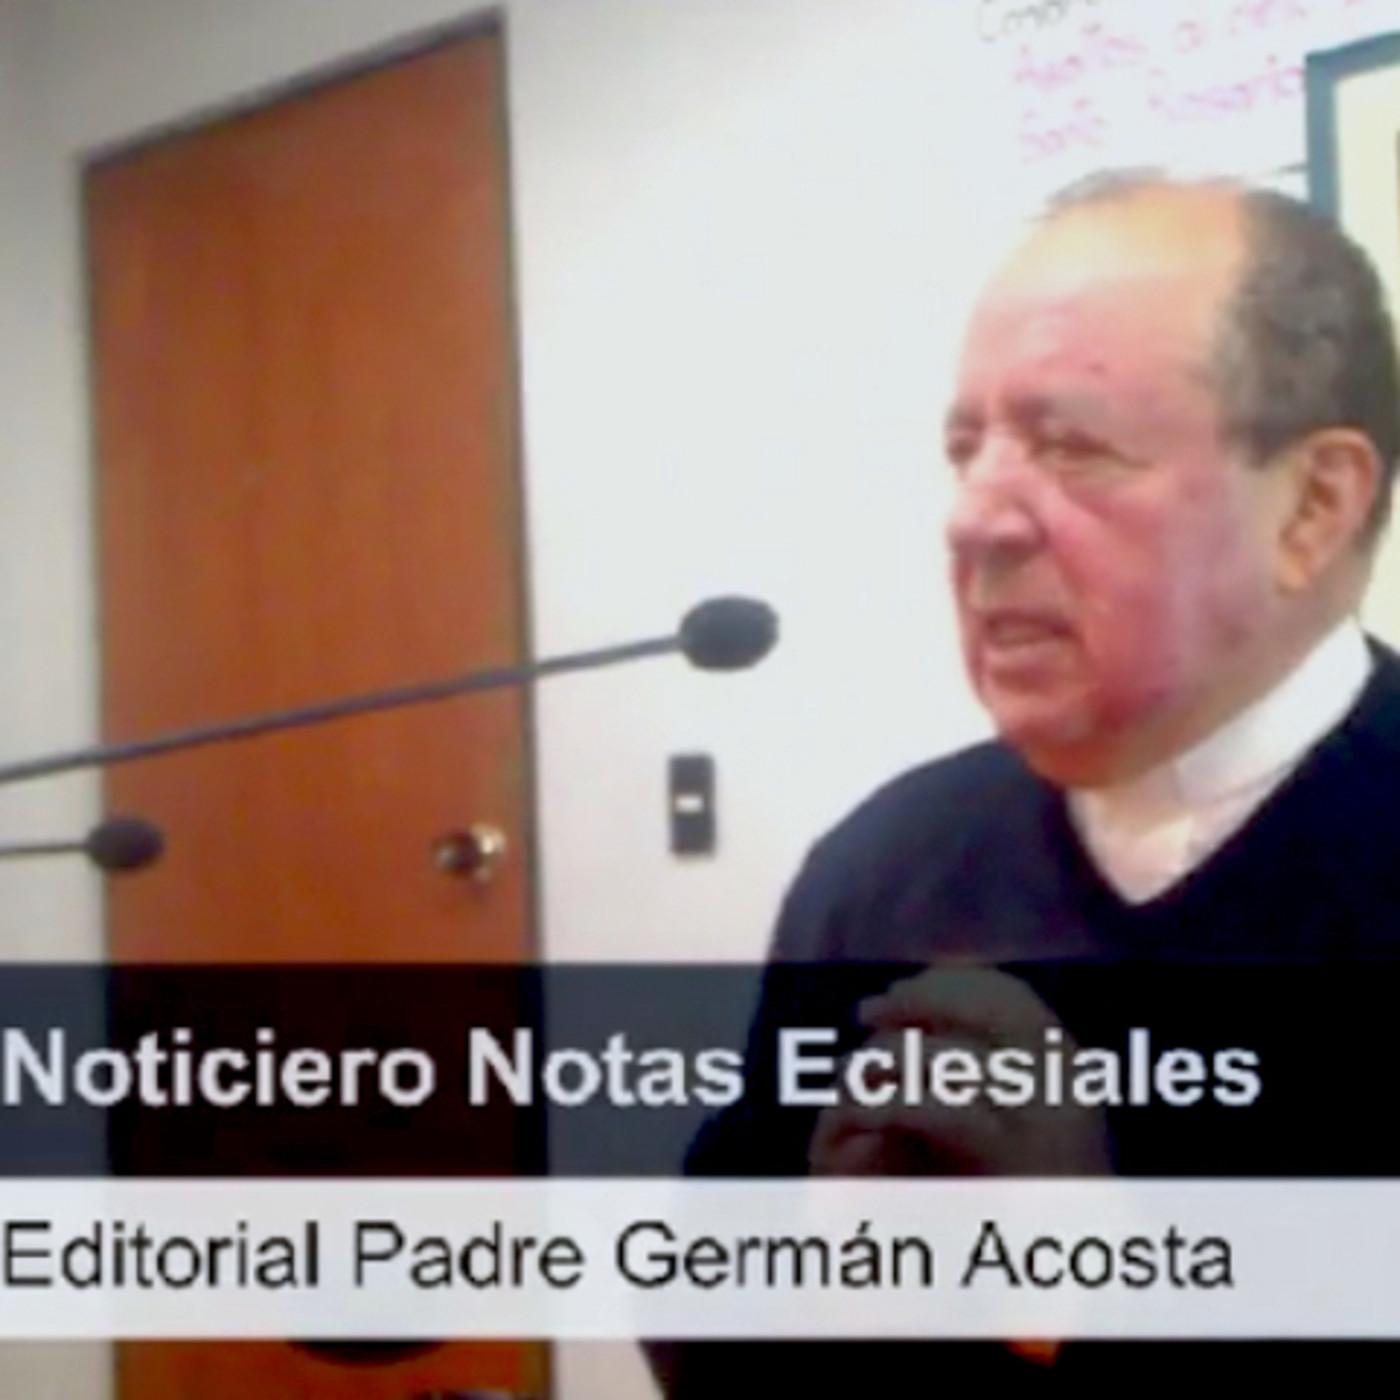 Editoriales Padre Germán Acosta Podcast en